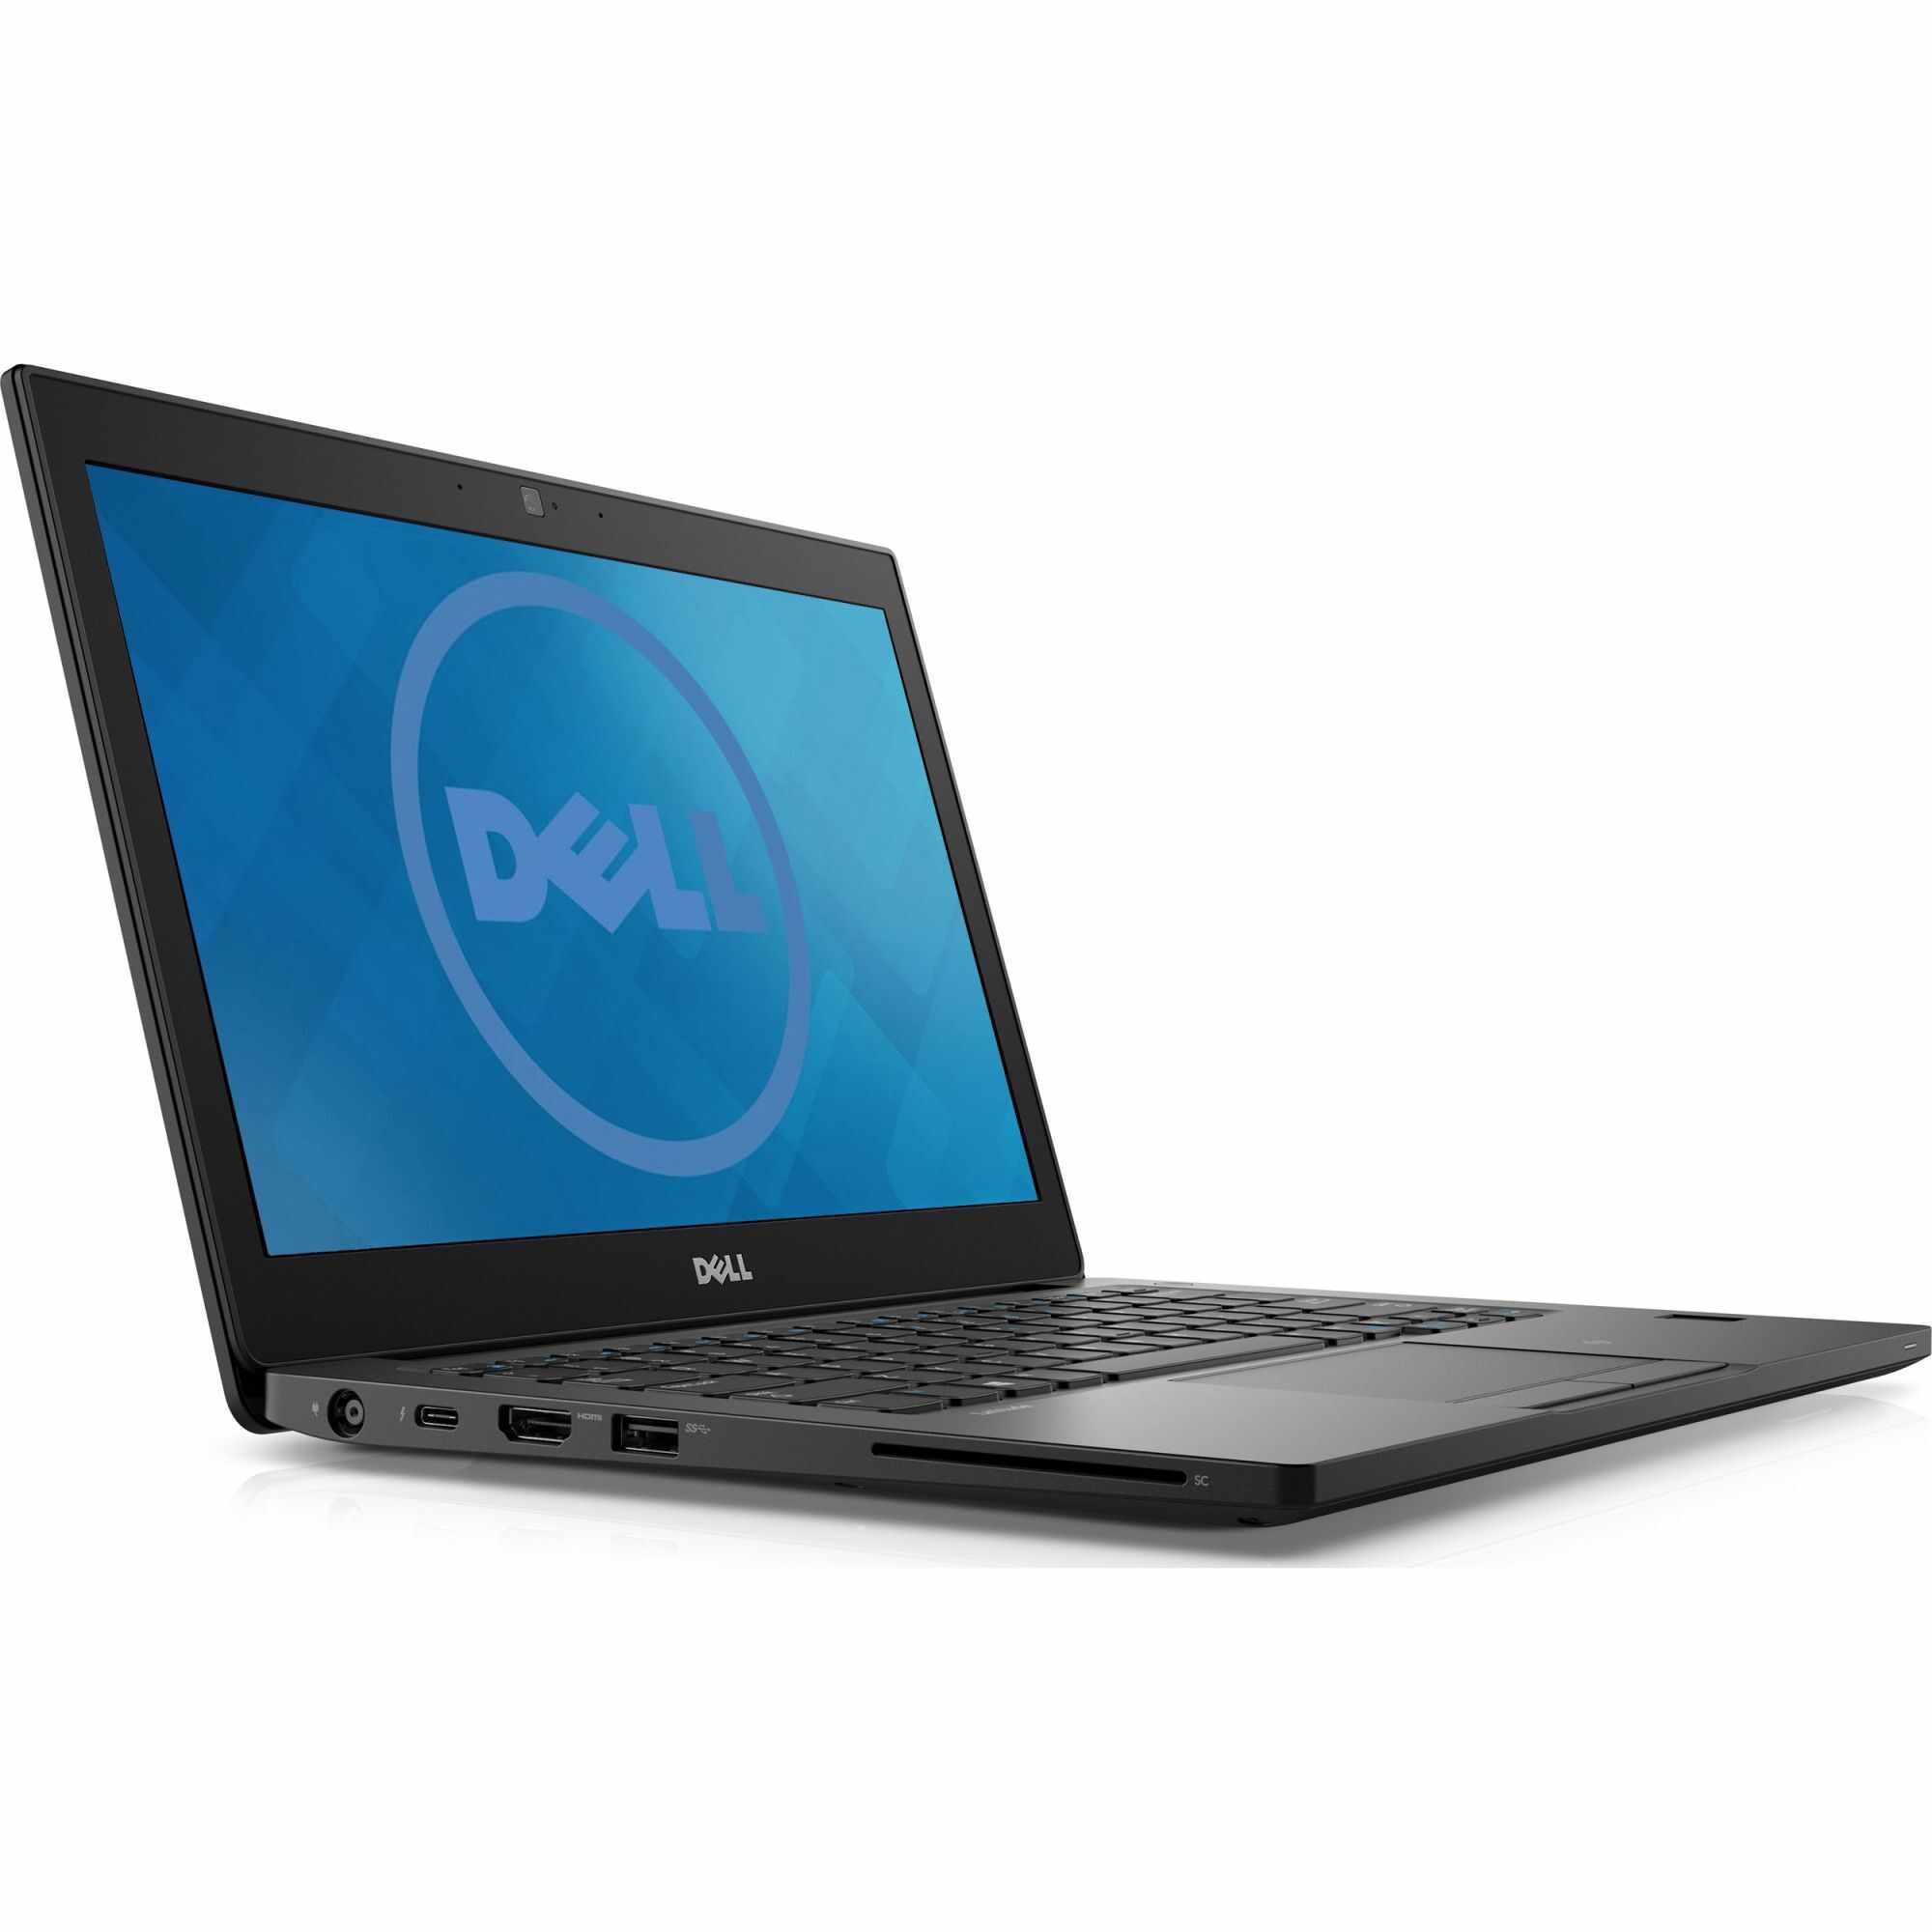 Laptop DELL, LATITUDE 7290, Intel Core i5-8350U, 1.70 GHz, HDD: 128 GB, RAM: 8 GB, webcam